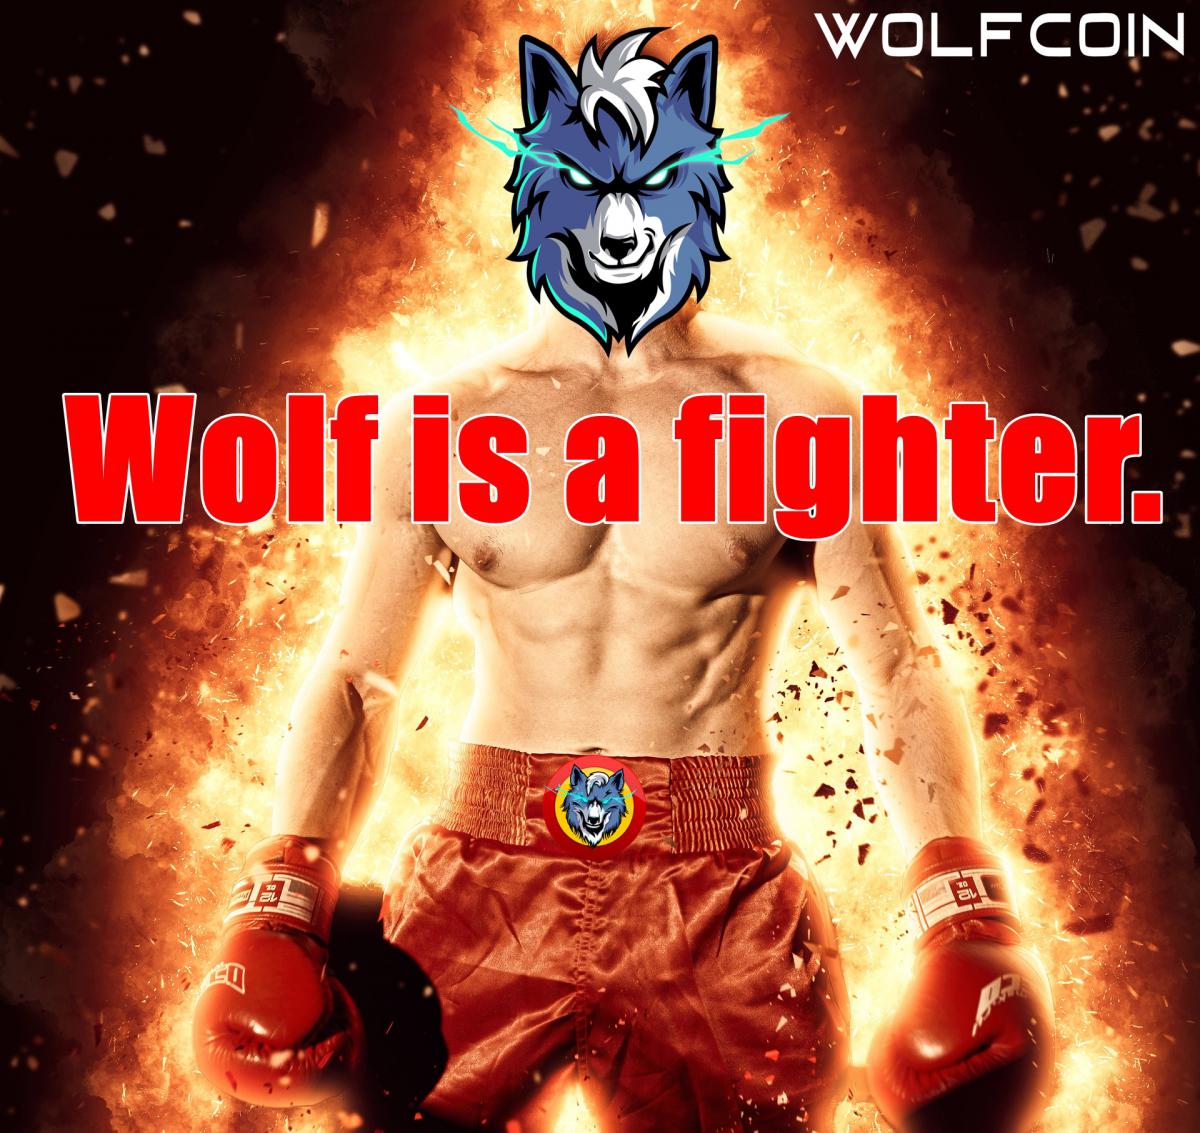 wolfcoinfighter.jpg